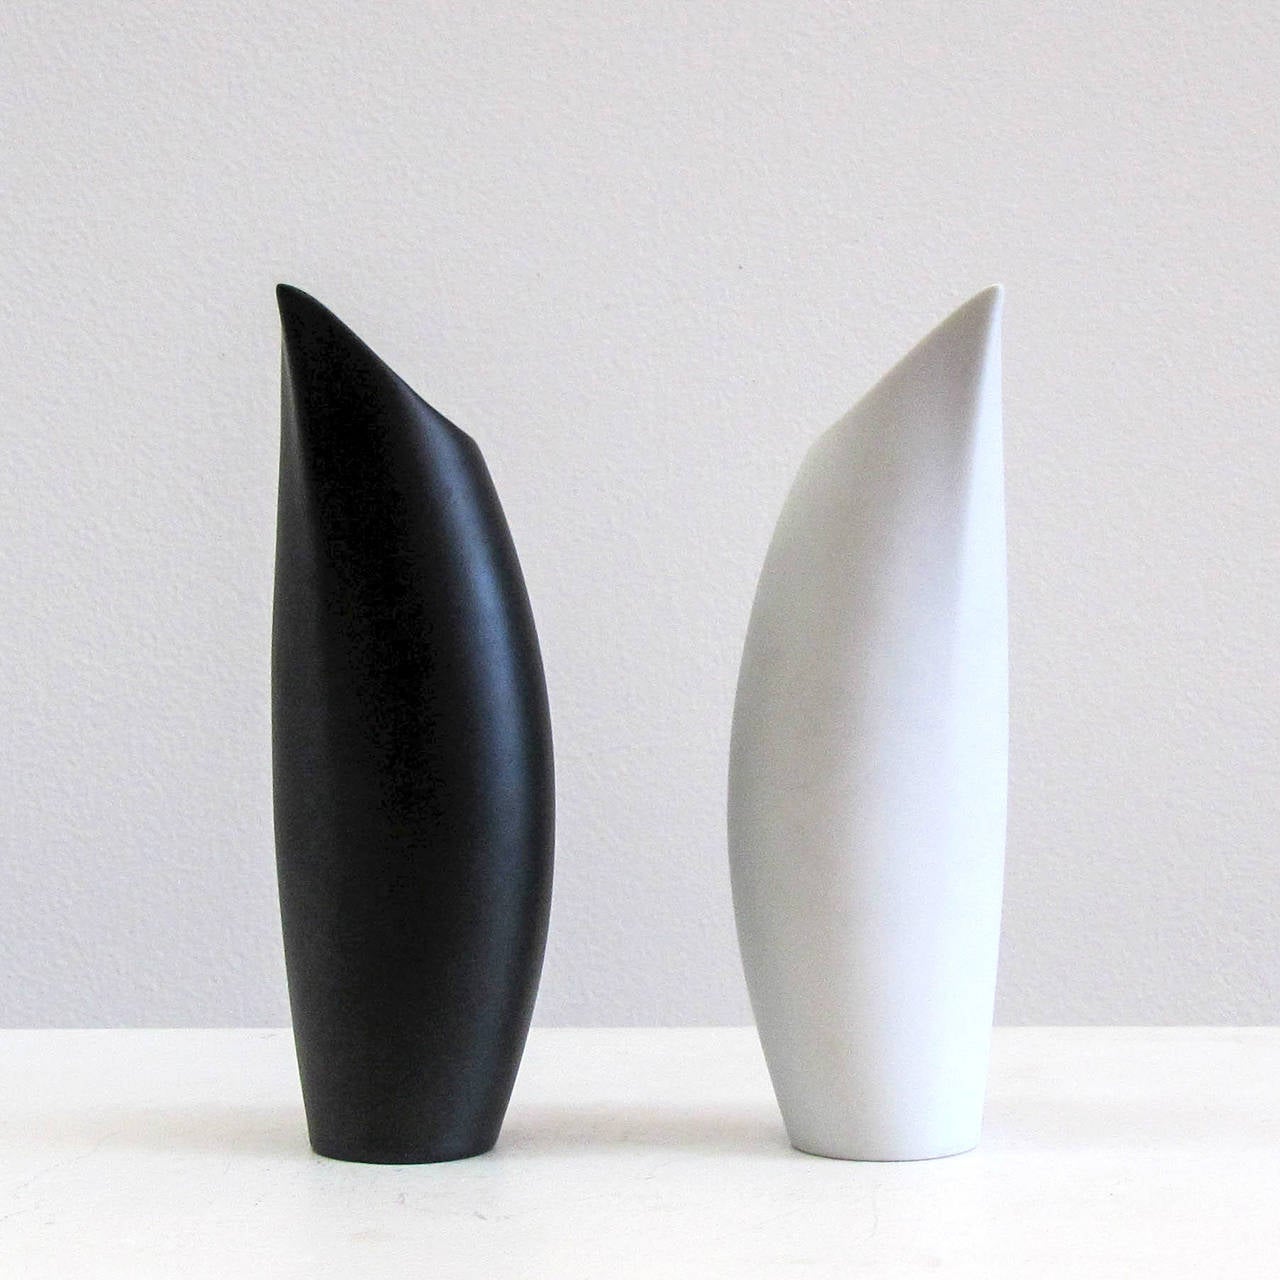 German Lino Sabattini “Penguin” Vases for Rosenthal